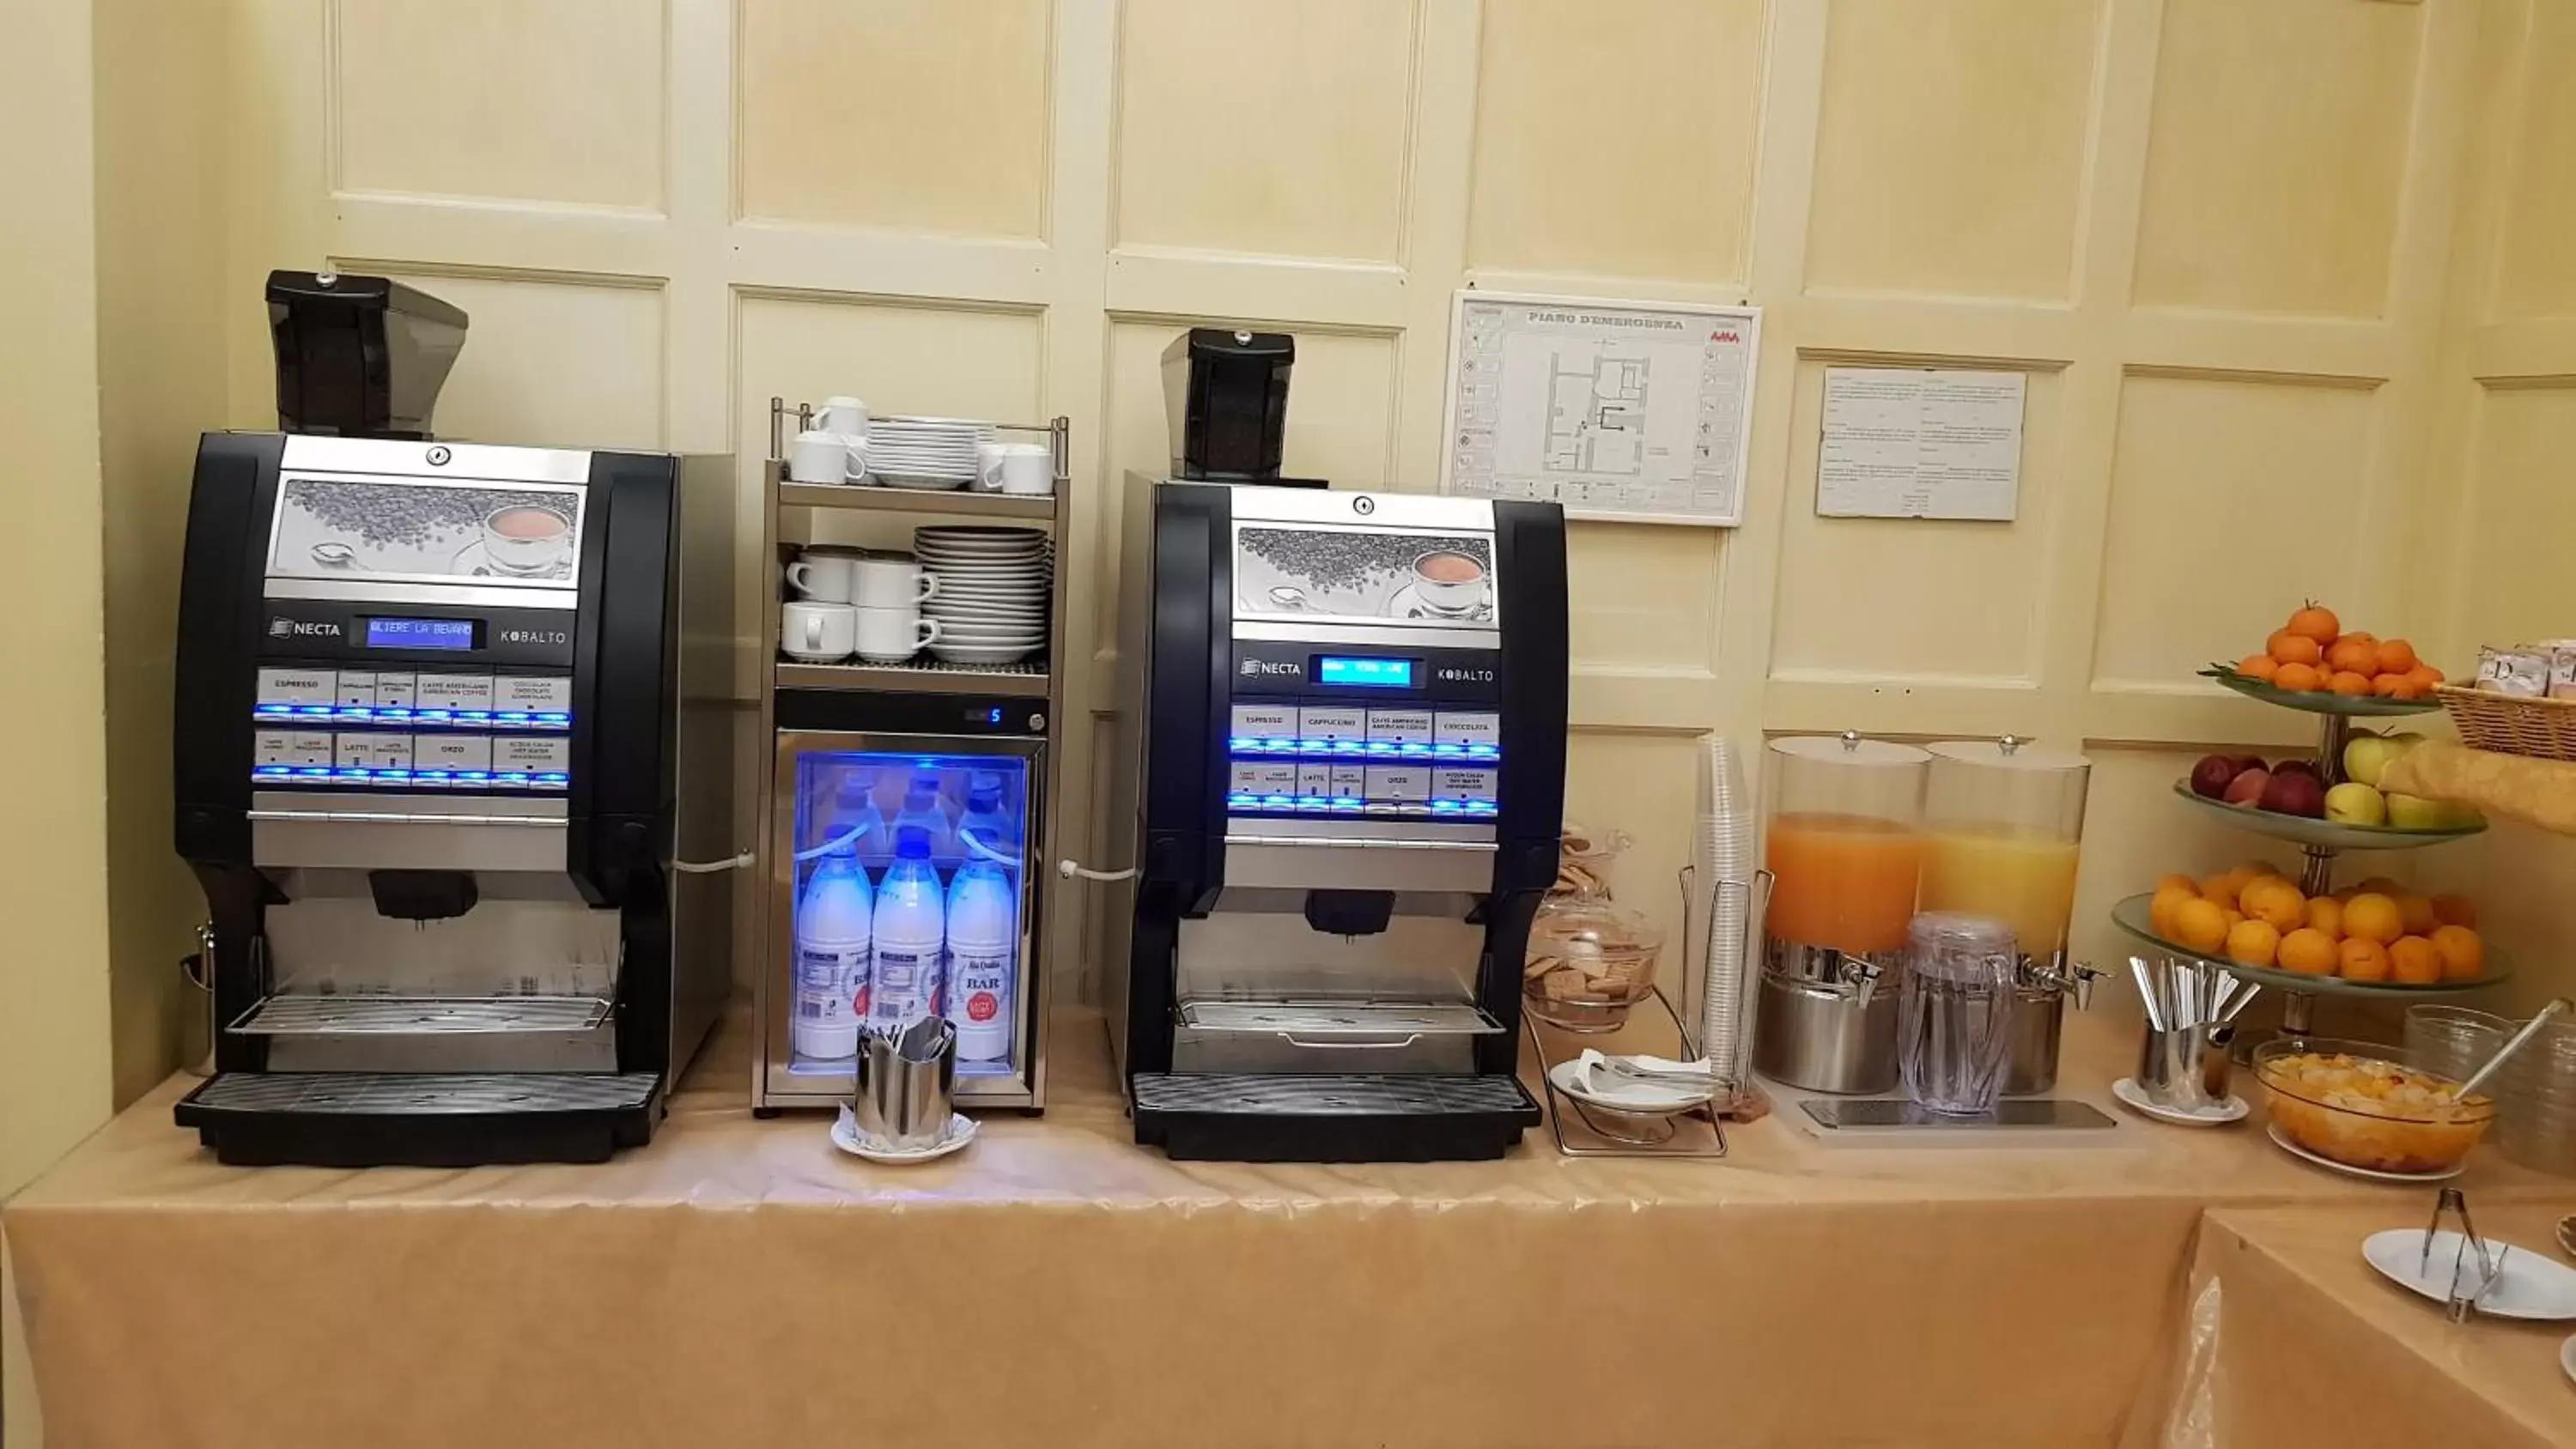 Buffet breakfast in Hotel Virgilio